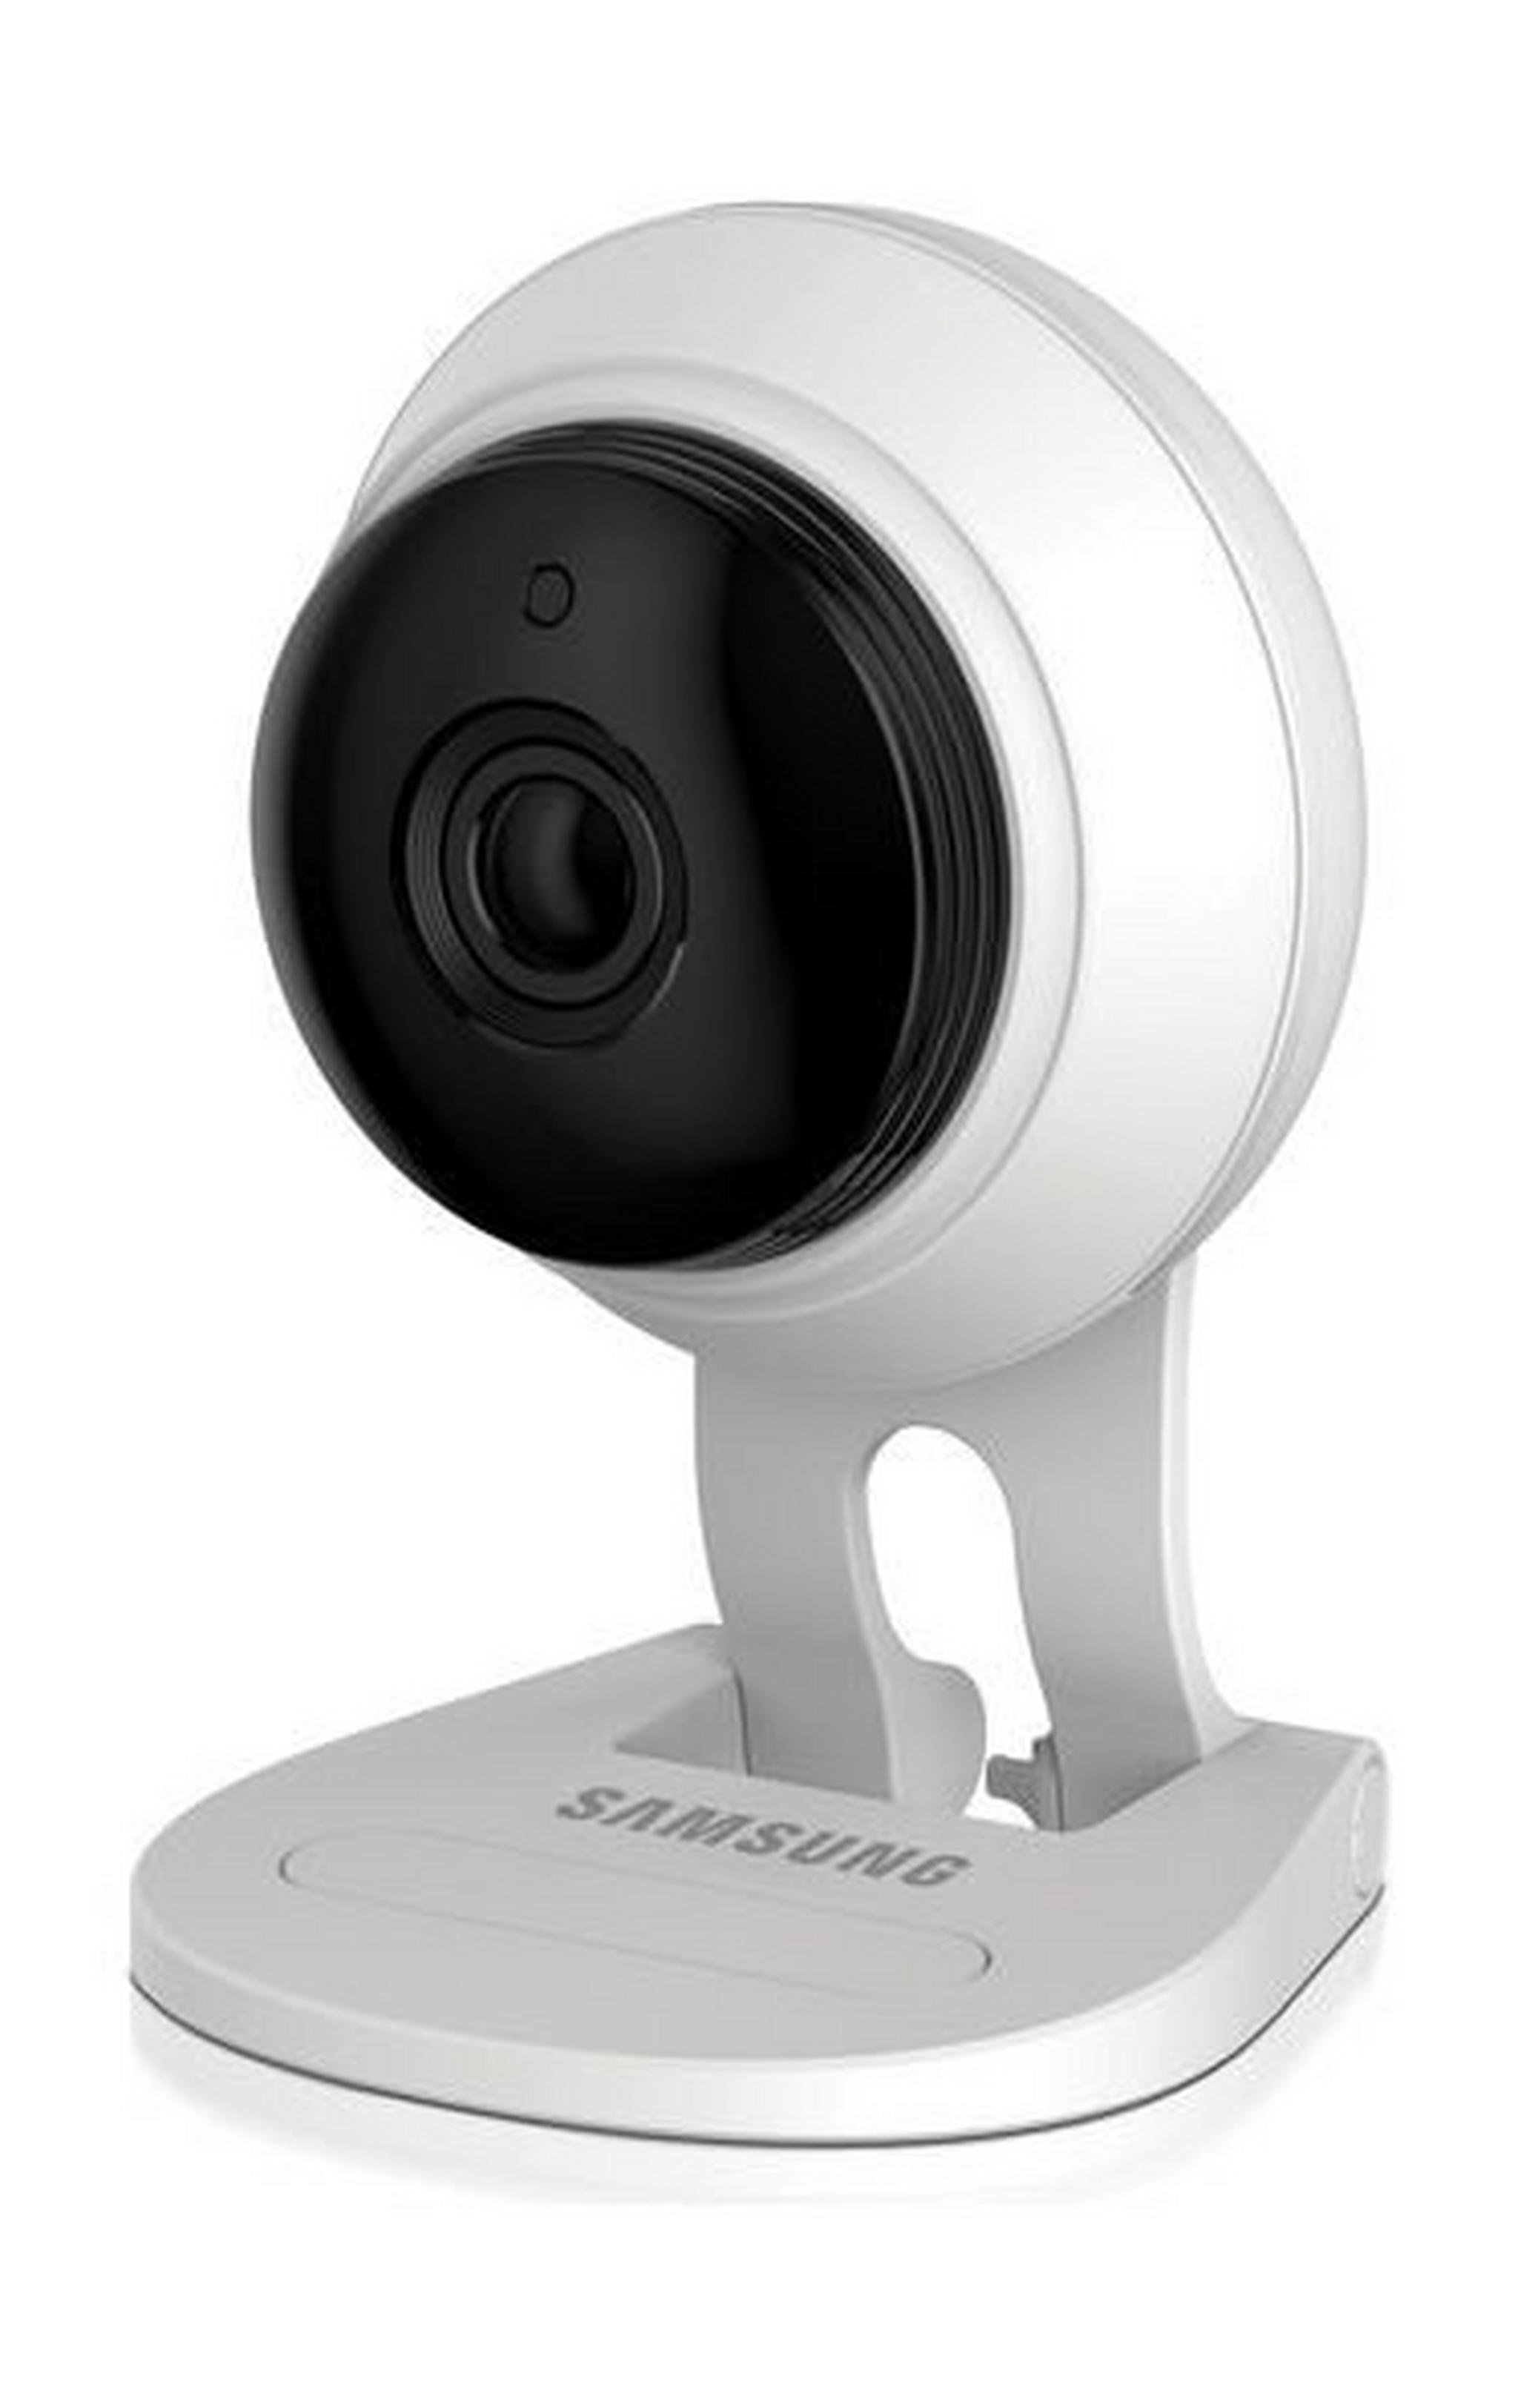 كاميرا سامسونج سمارتكام إتش دي بلس ١٠٨٠ بكسل بتقنية الواي - فاي مع رؤية ليلية - أبيض (SNH-C6417BN)